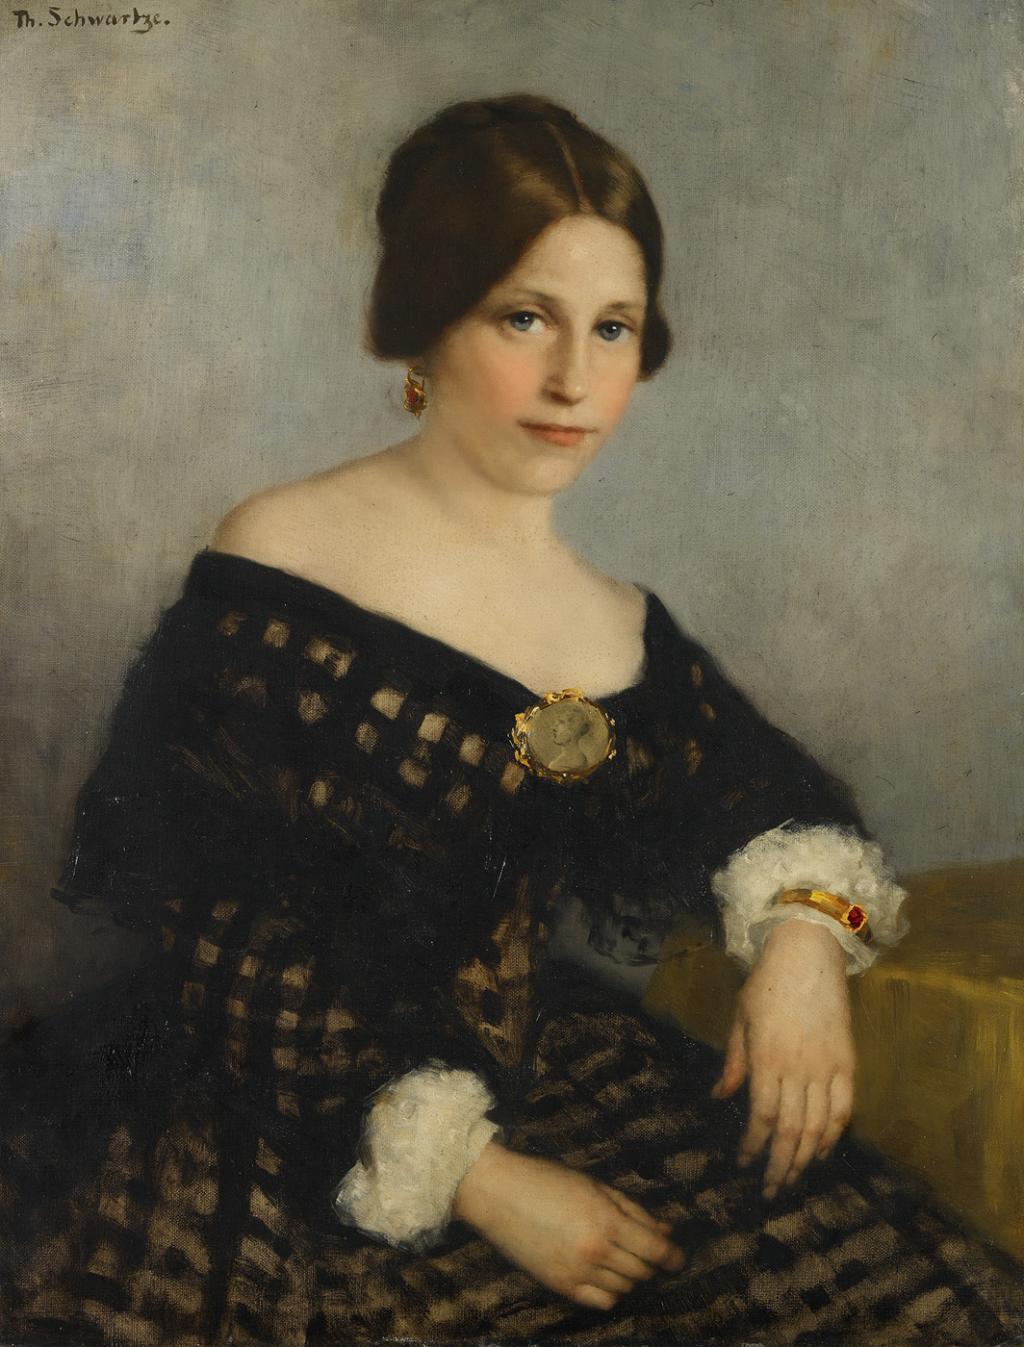 Thérèse Schwartze, Sophia Adriana de Bruijn (1816-1890), 1890, Amsterdam Museum